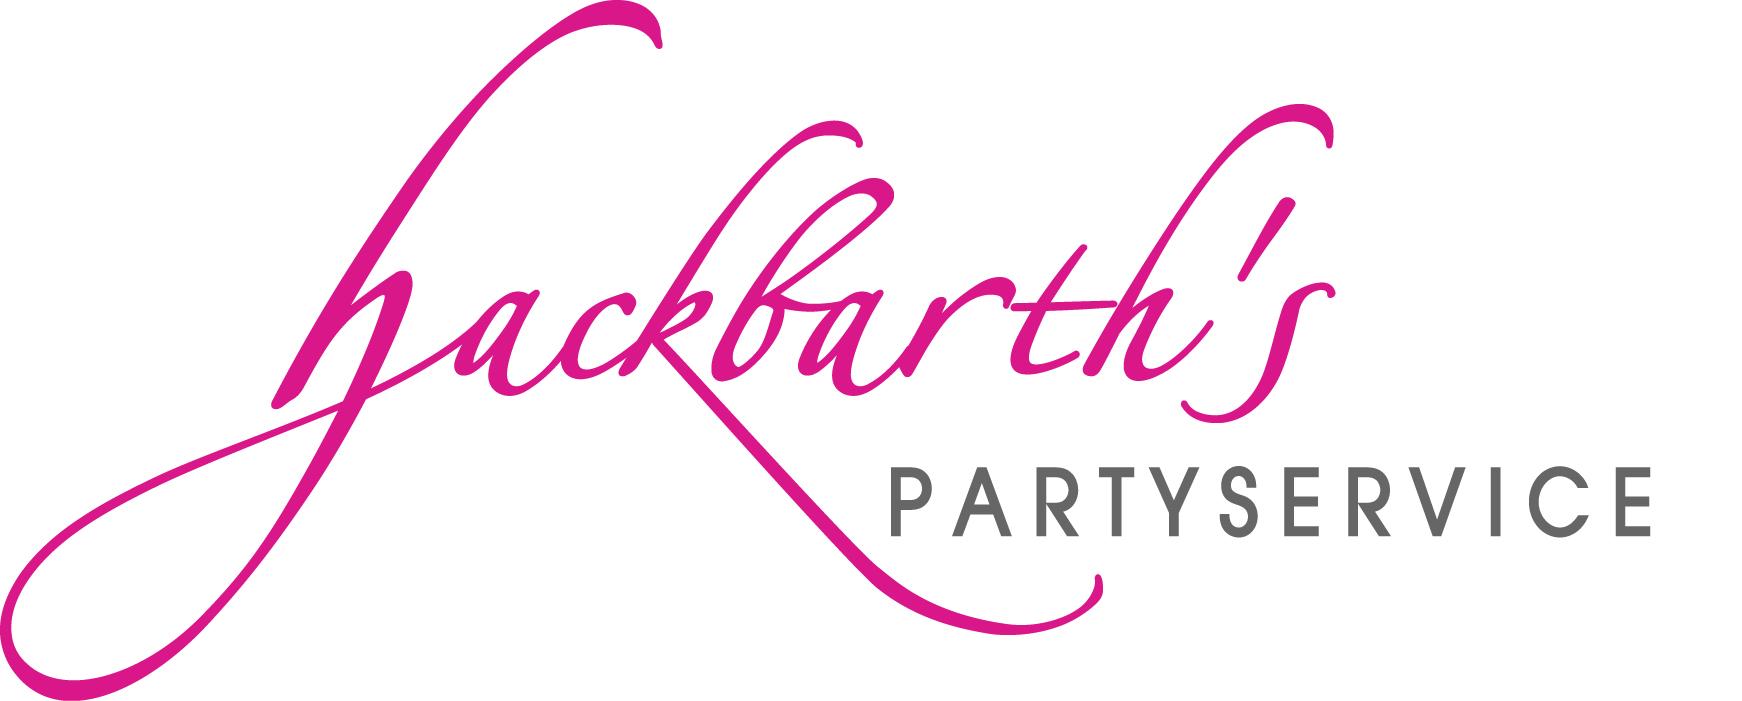 Hackbarths Partyservice